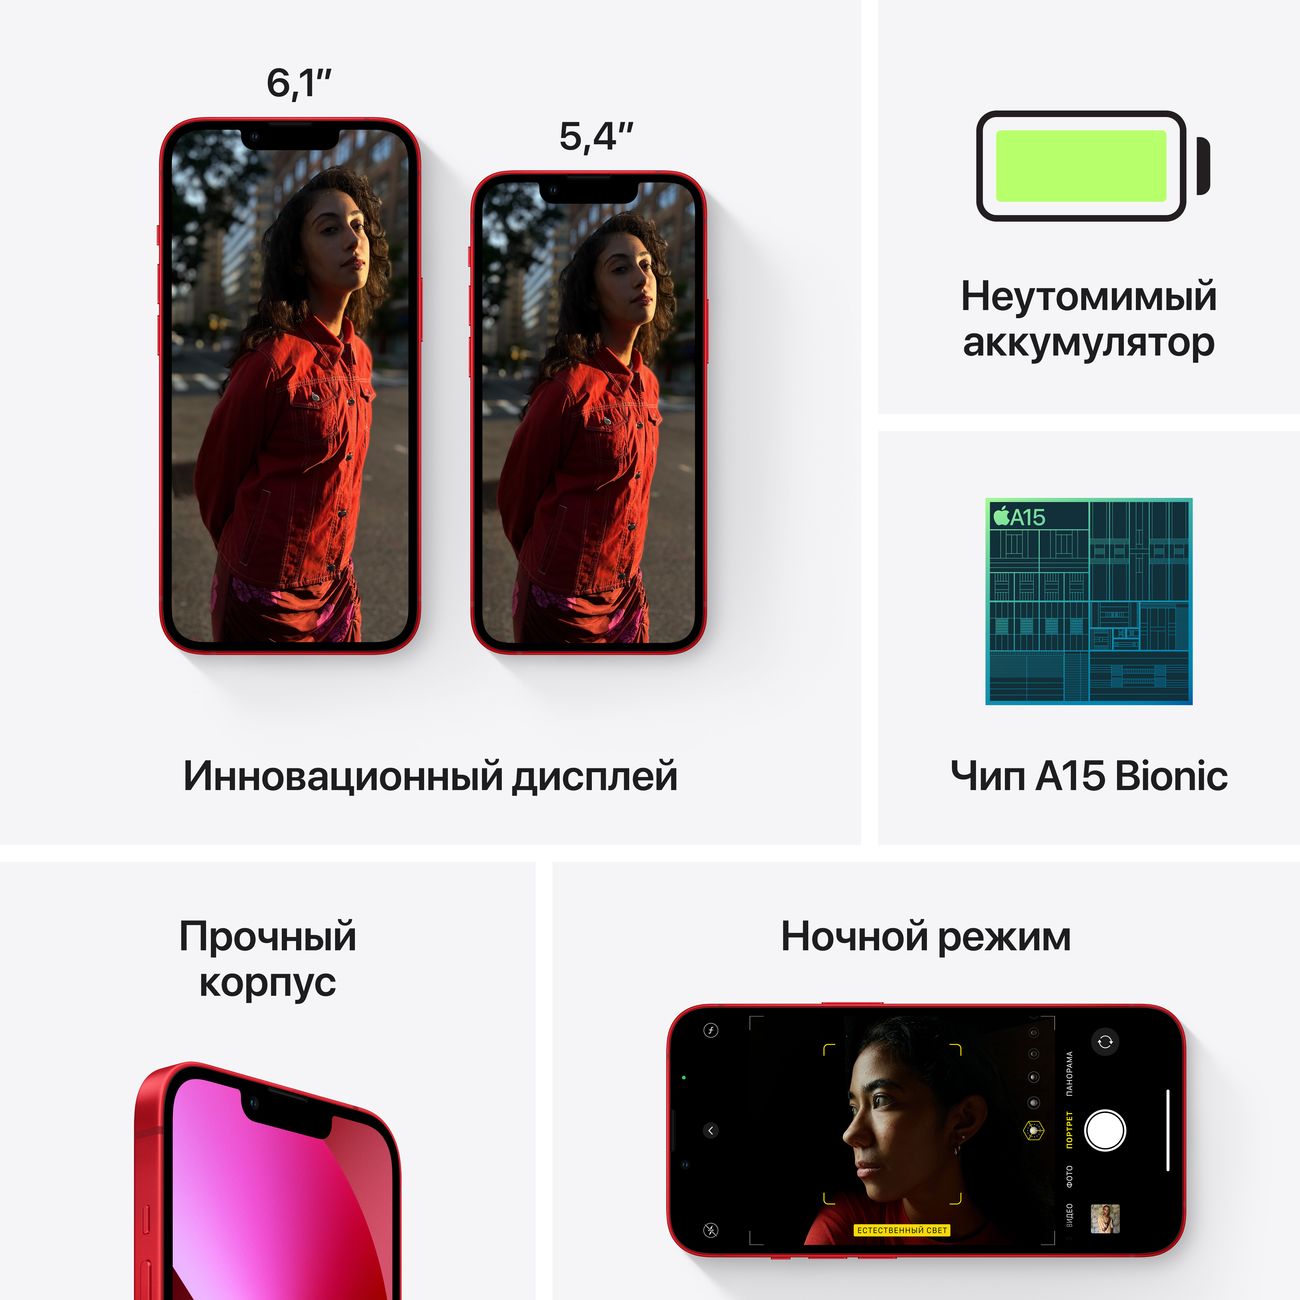 Купить смартфон apple iphone 13 mini 256gb pink Apple iPhone 13 mini в официальном магазине Apple, Samsung, Xiaomi. iPixel.ru Купить, заказ, кредит, рассрочка, отзывы,  характеристики, цена,  фотографии, в подарок.